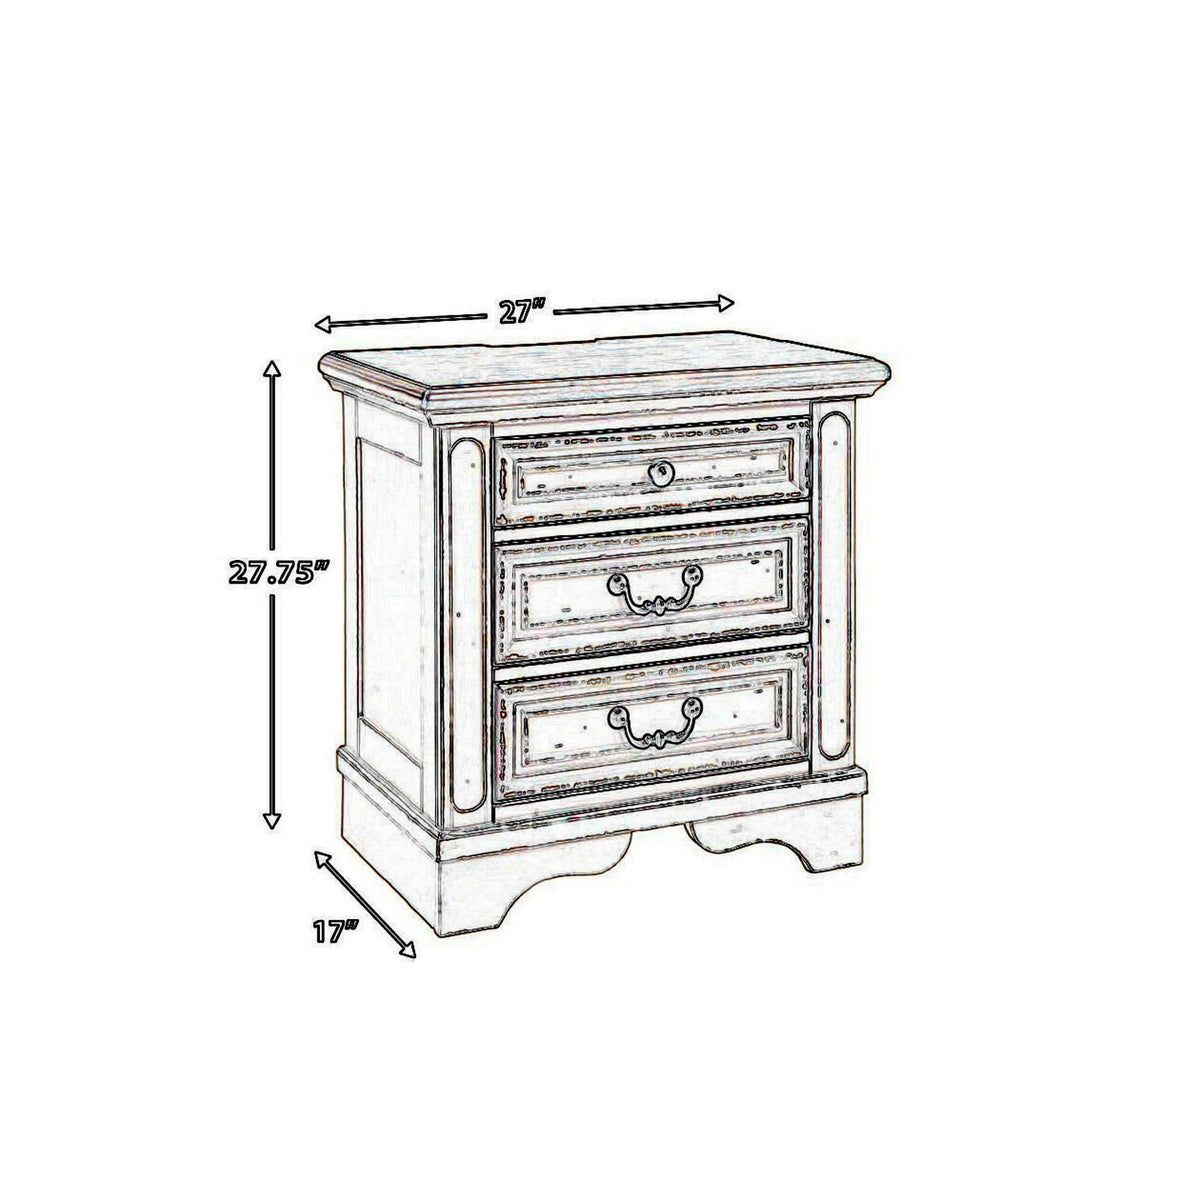 3 Drawer Rectangular Wooden Desk with Block Leg Support in White - BM204149